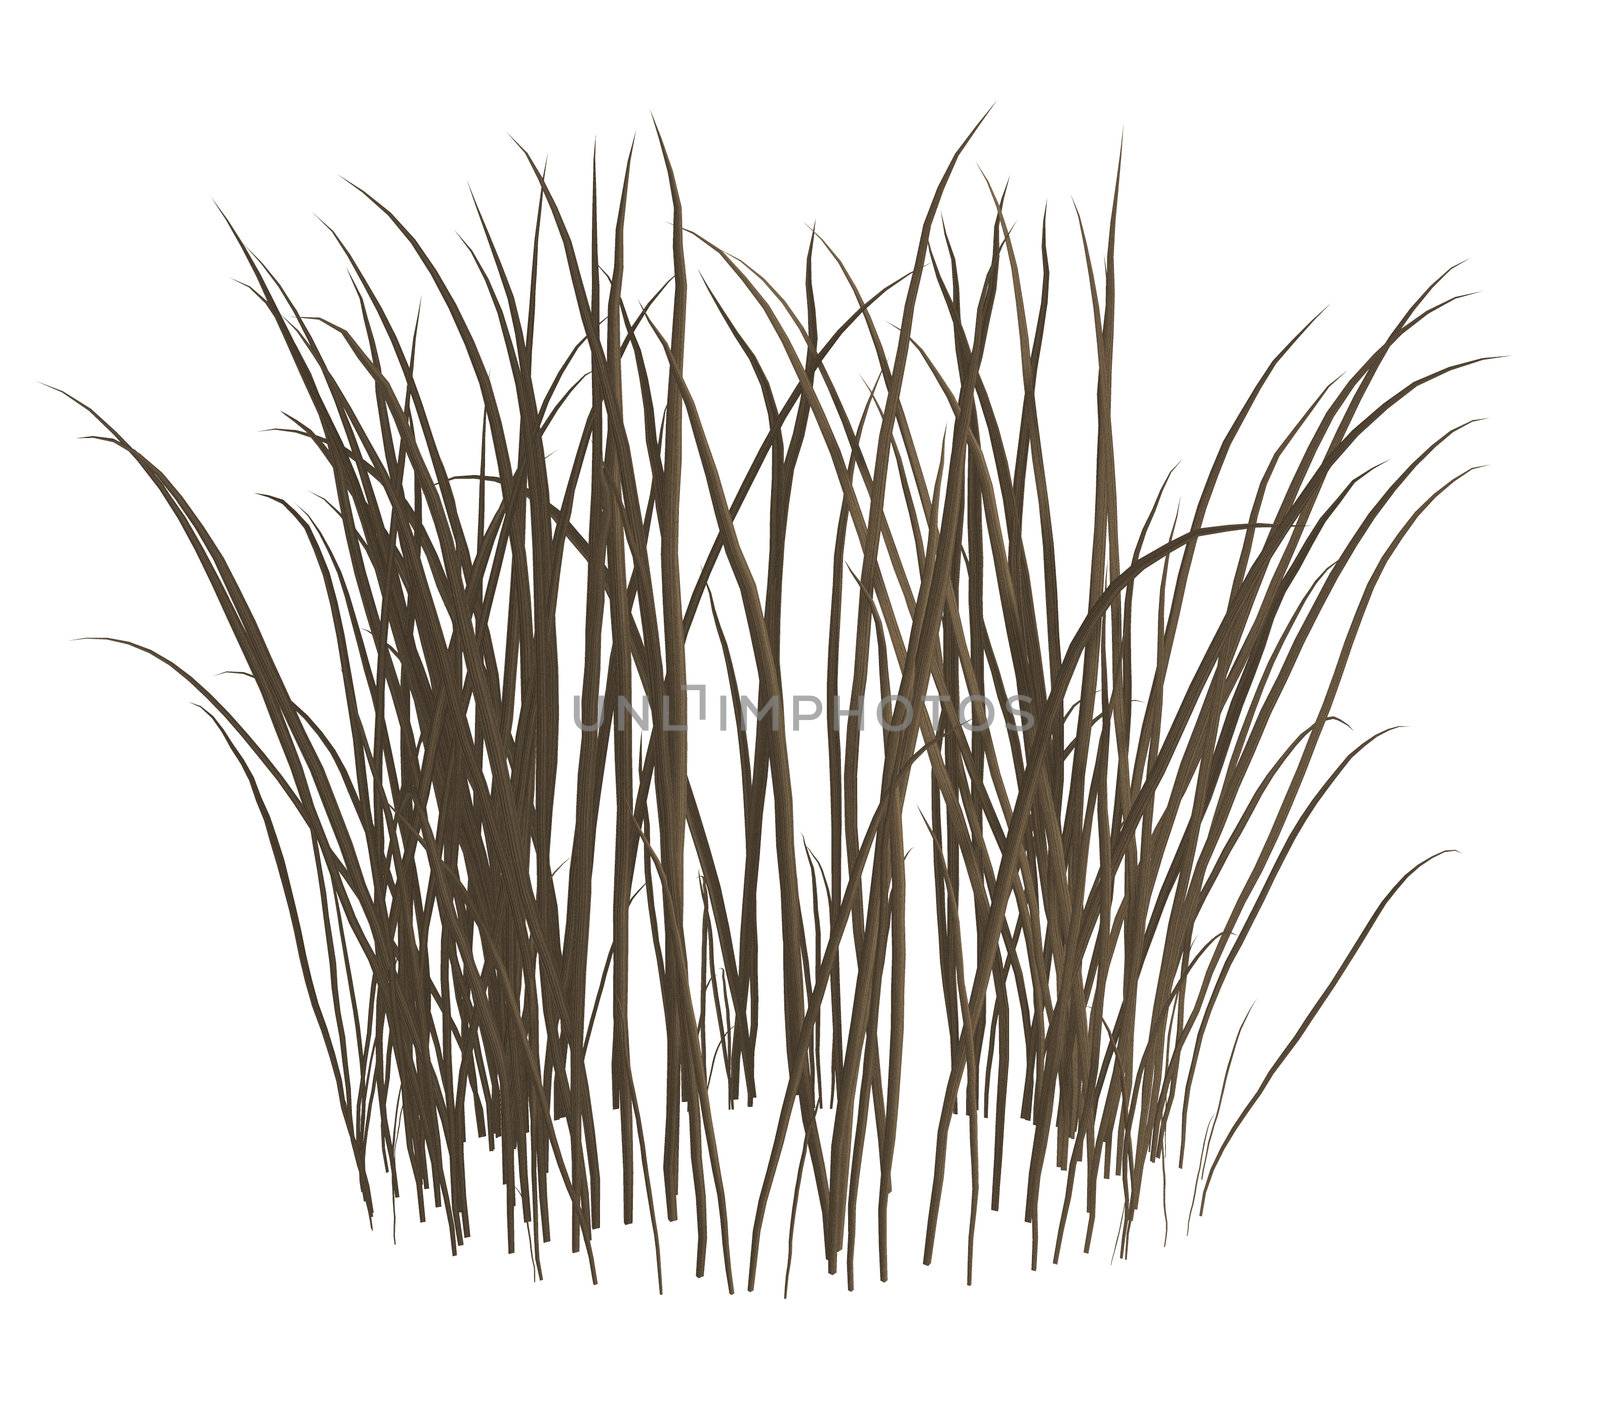 Dark grey dead grass on a white background